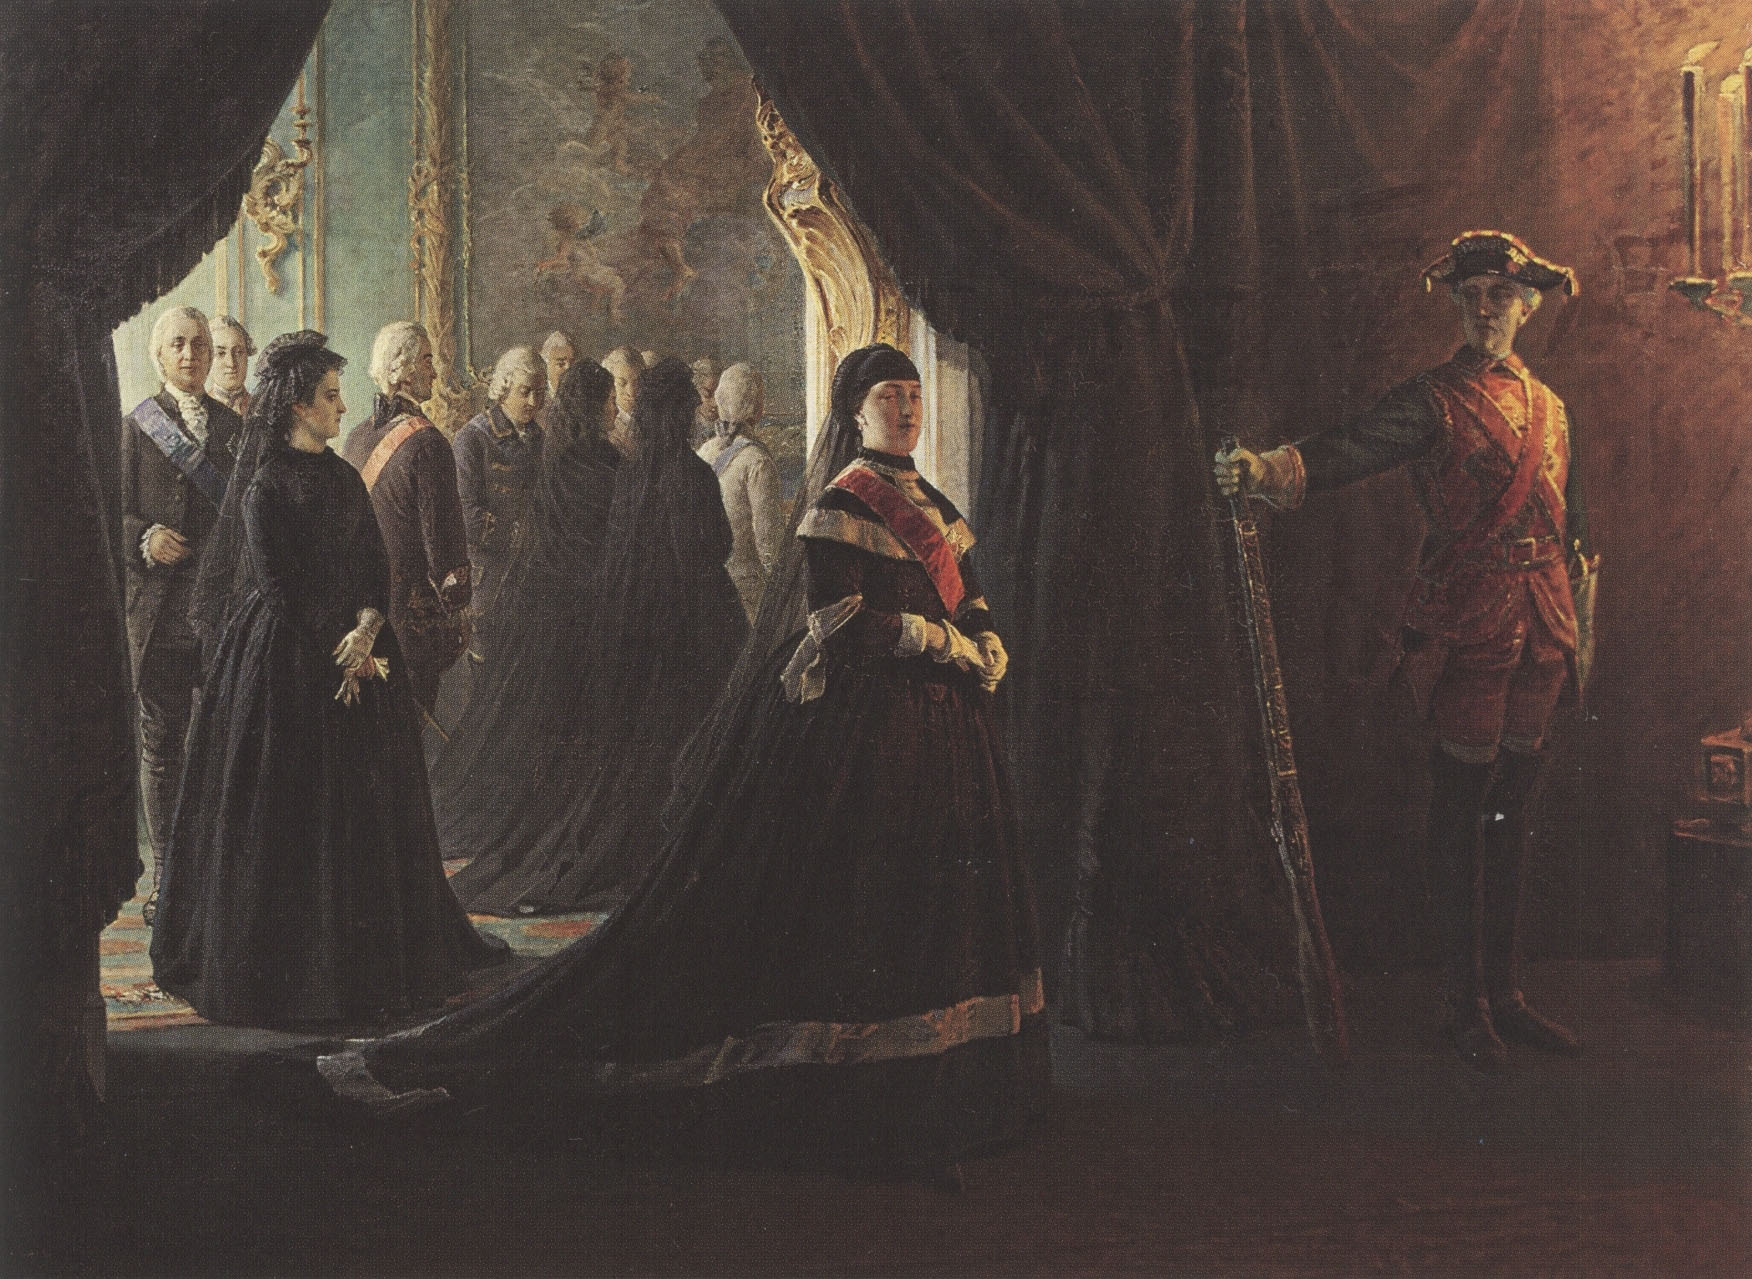 Николай Ге. "Екатерина II у гроба императрицы Елизаветы". 1874.